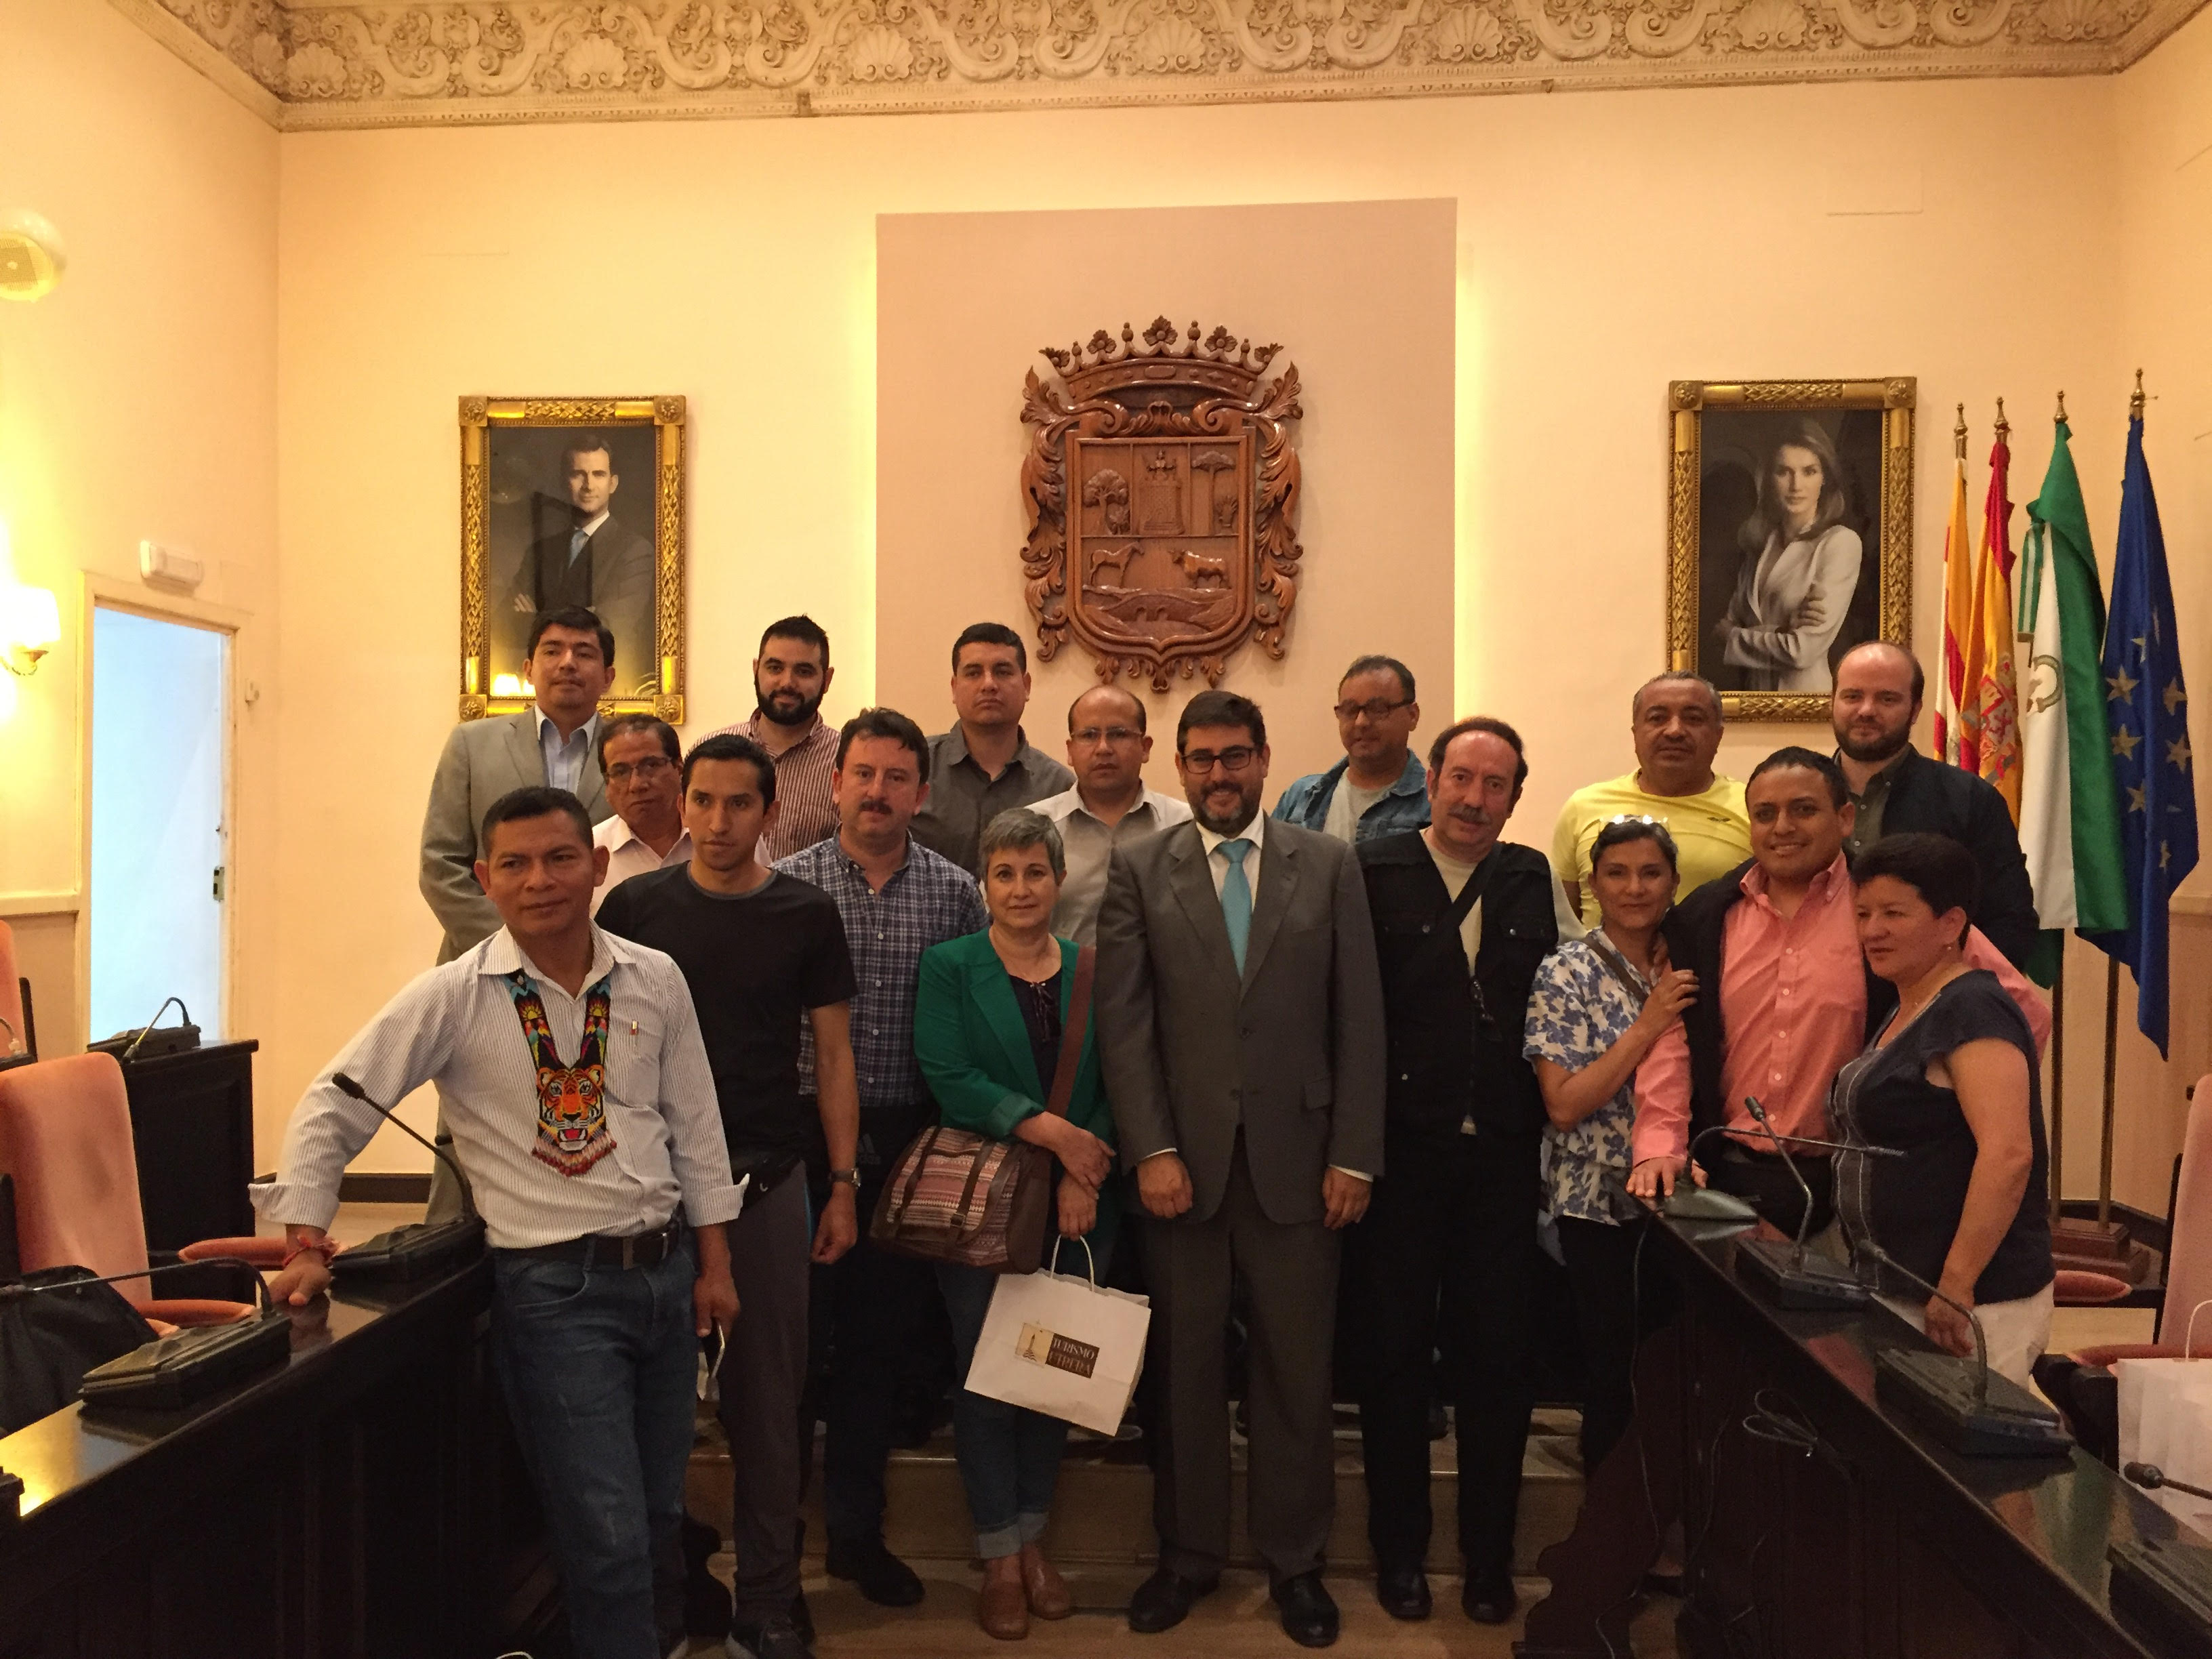 15 representantes políticos de Ecuador visitan Utrera interesados en la gestión del Ayuntamiento